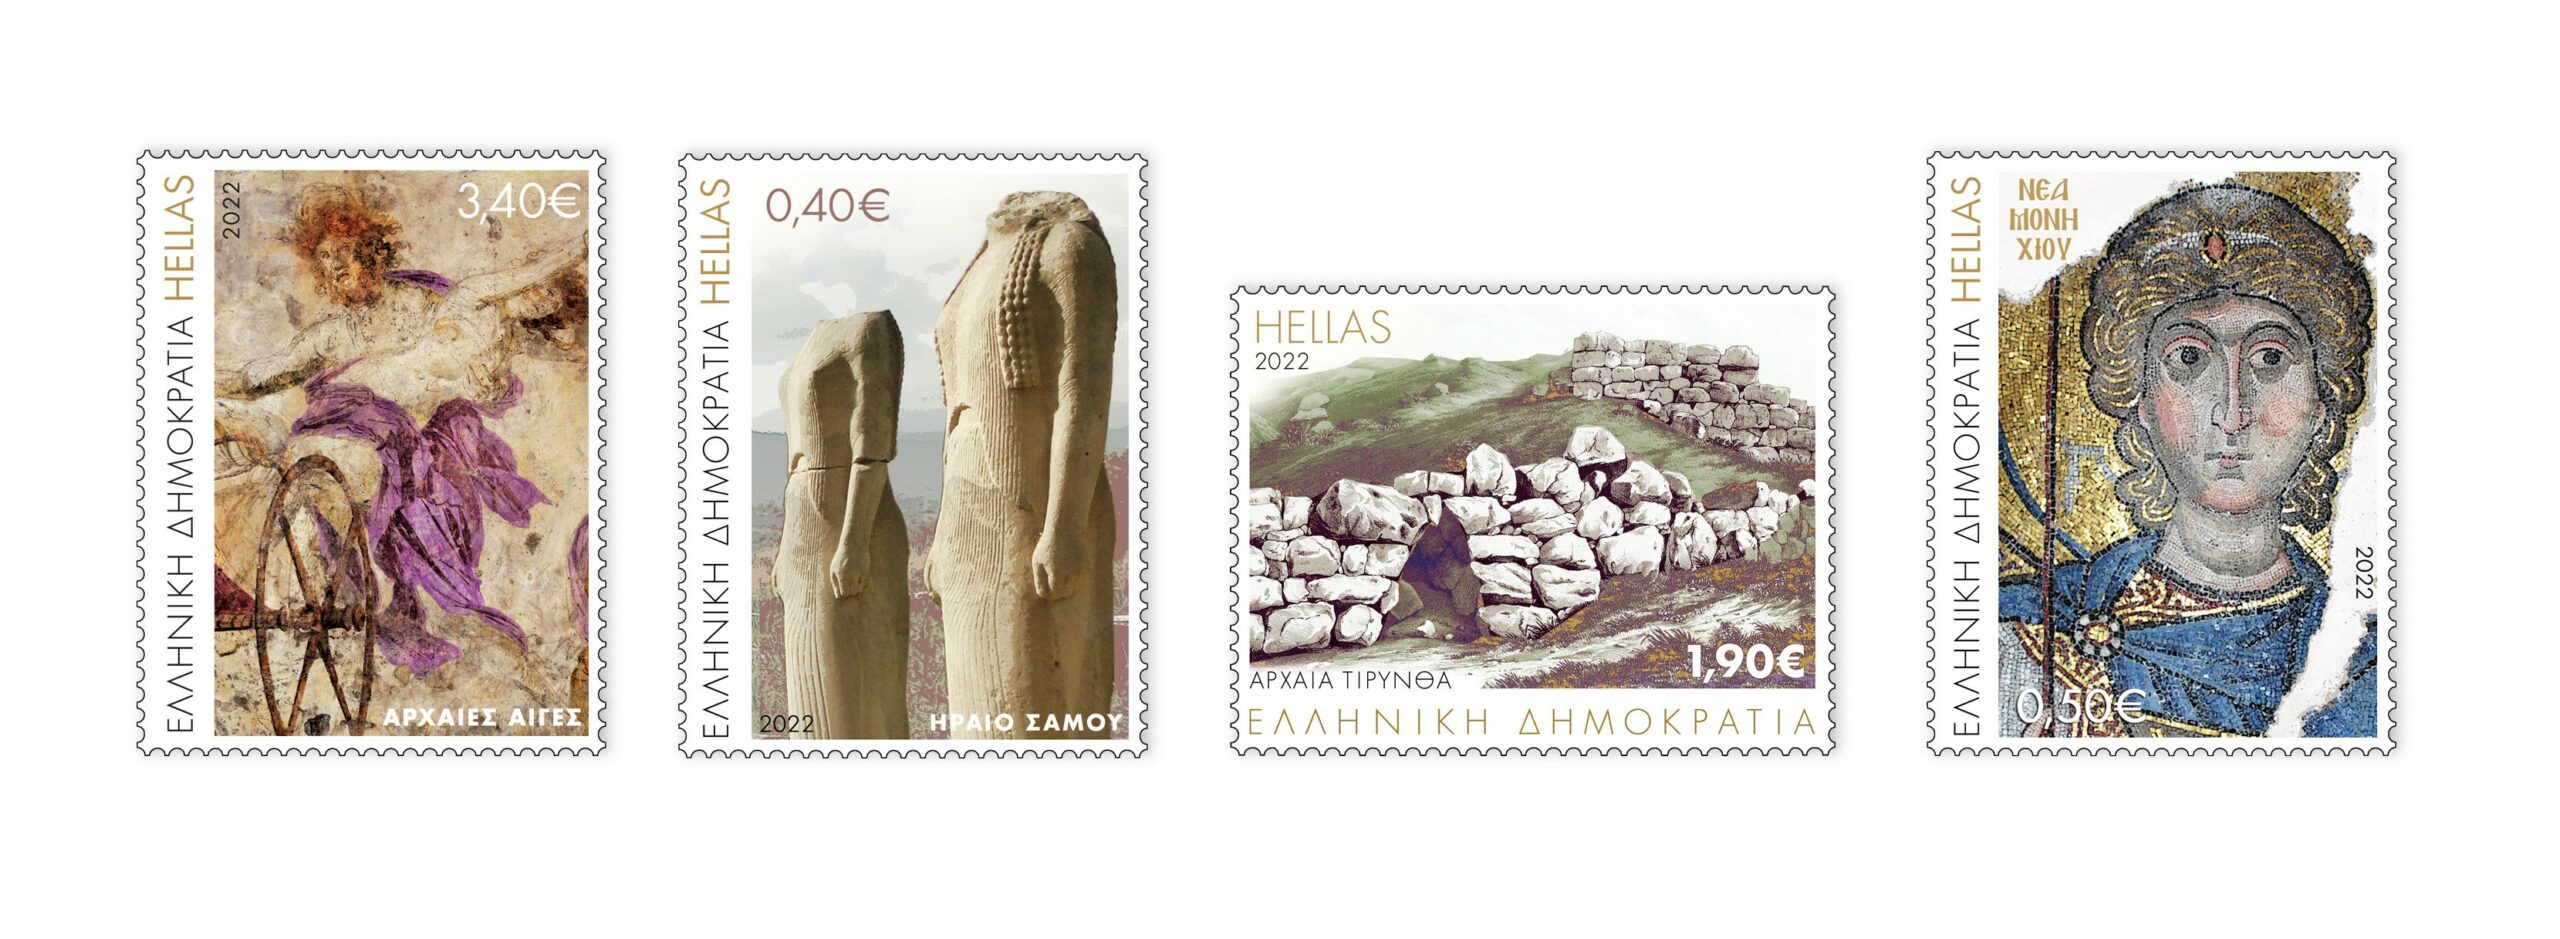 Ναύπλιο: Η Αρχαία Τίρυνθα στα πρώτα γραμματόσημα των Ελληνικών Ταχυδρομείων για το 2022